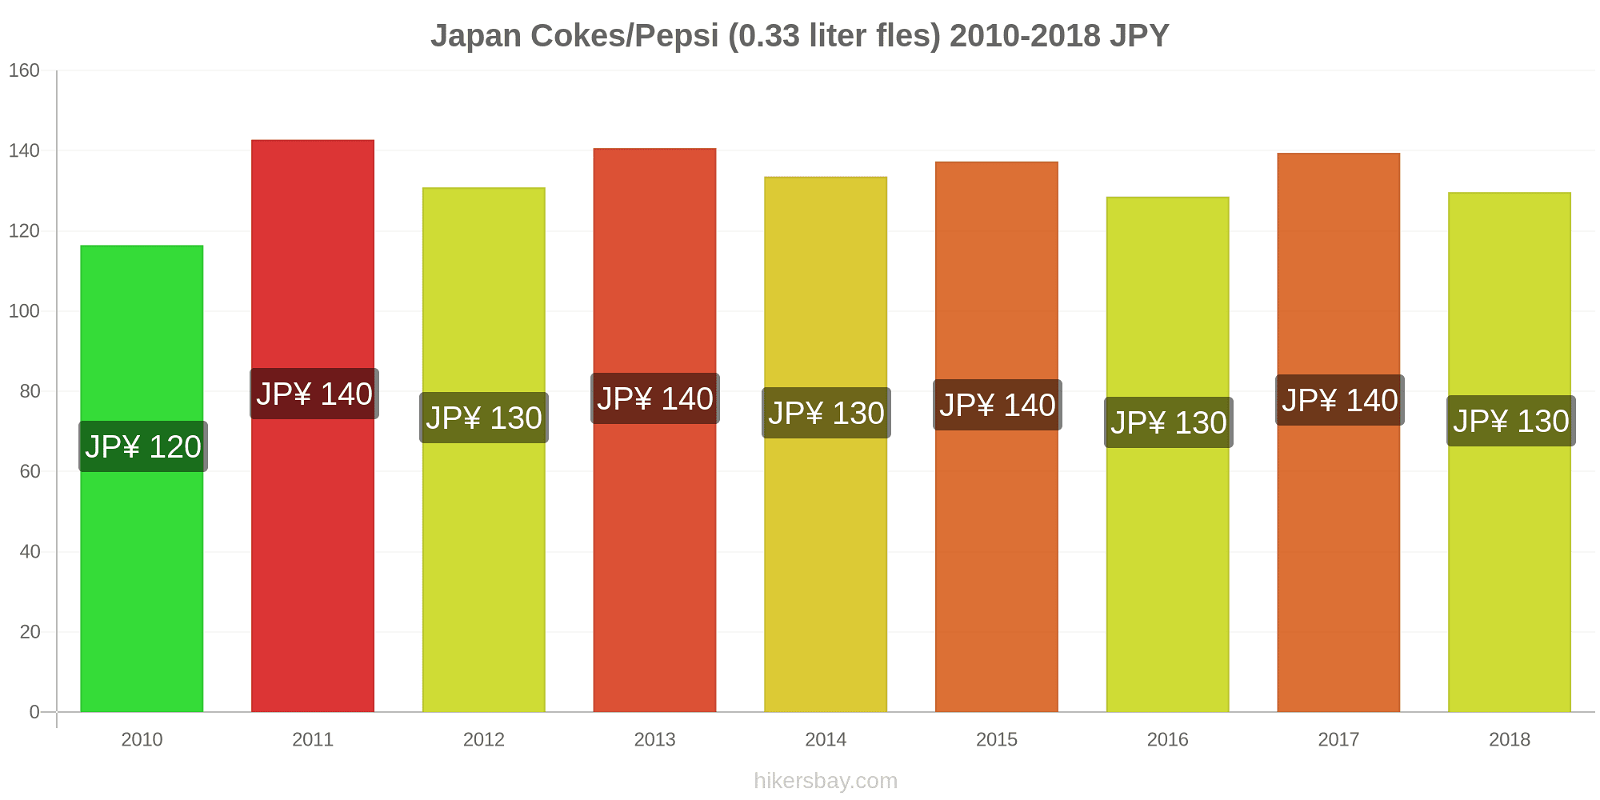 Japan prijswijzigingen Cokes/Pepsi (0,33 literfles) hikersbay.com